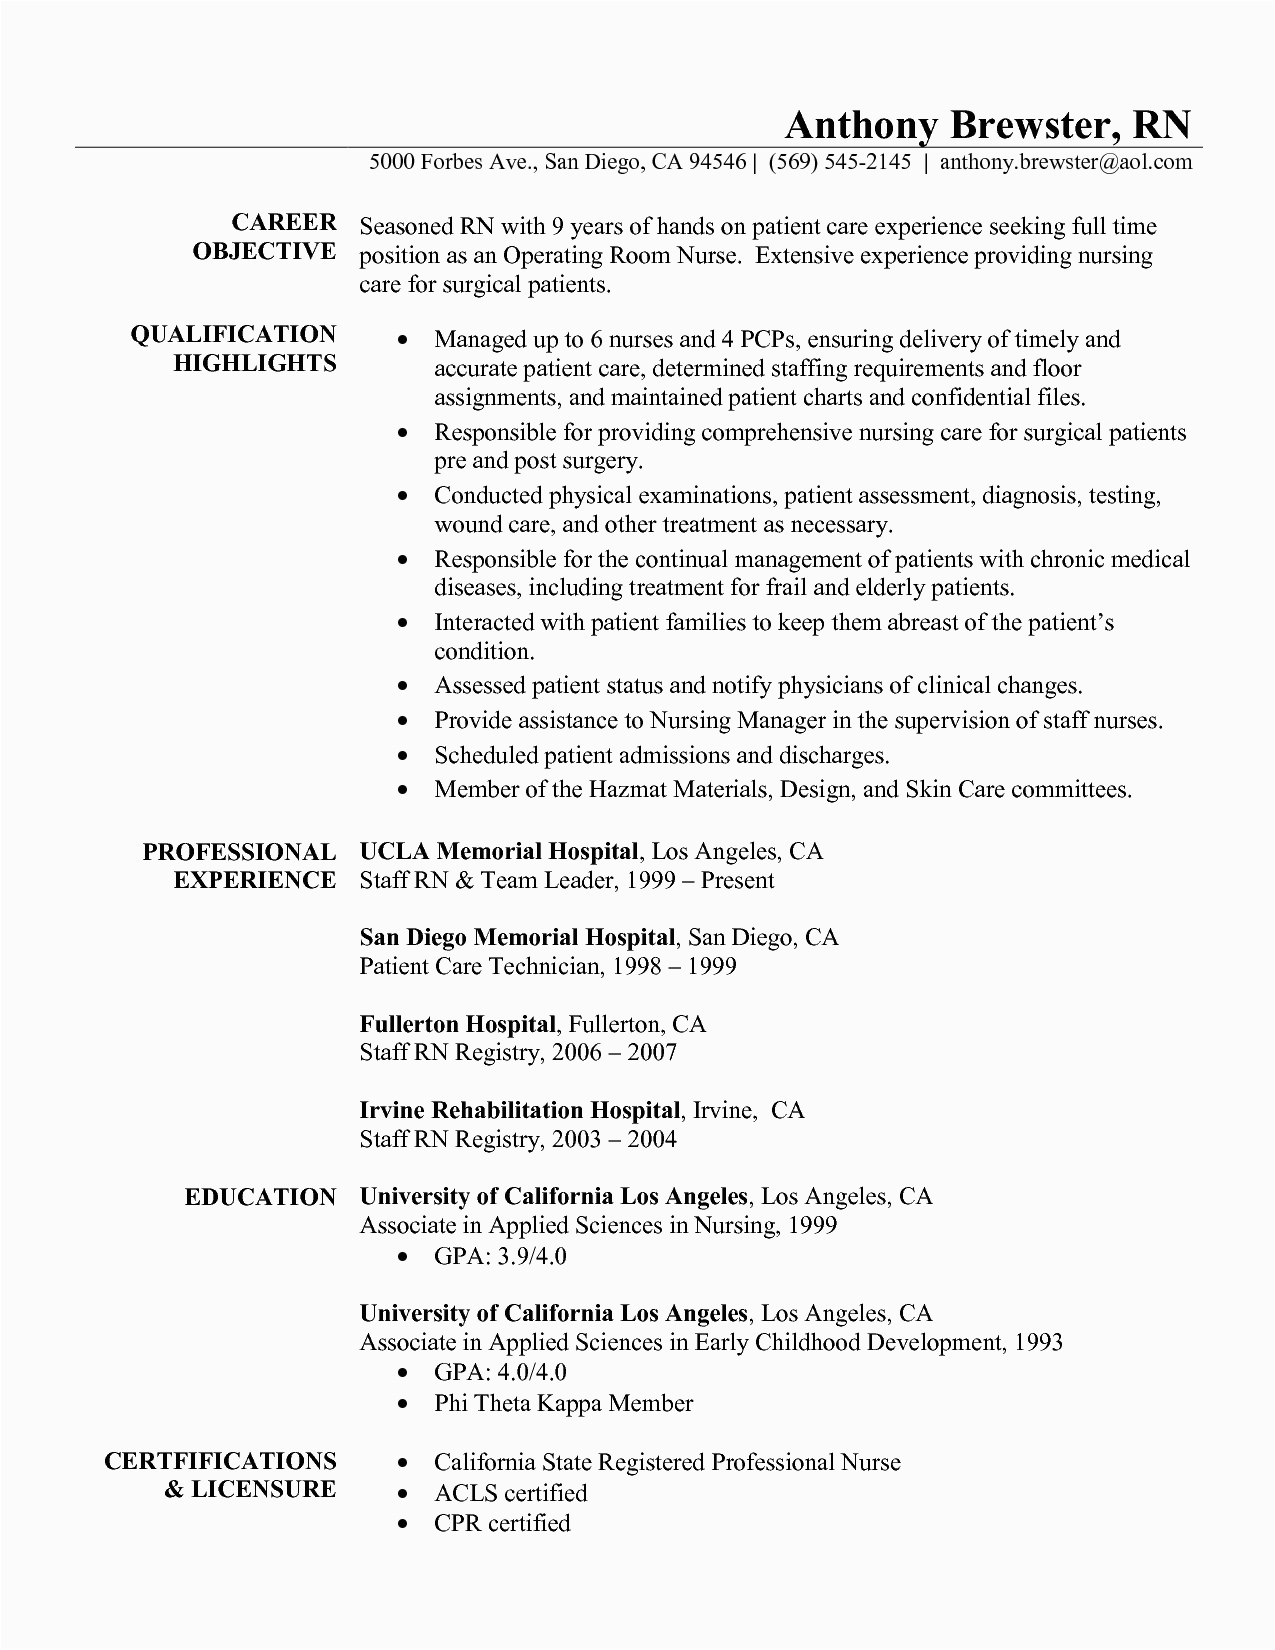 Sample Functional Resume for Registered Nurse Fill In the Blank Nursing Resume Best Resume Examples